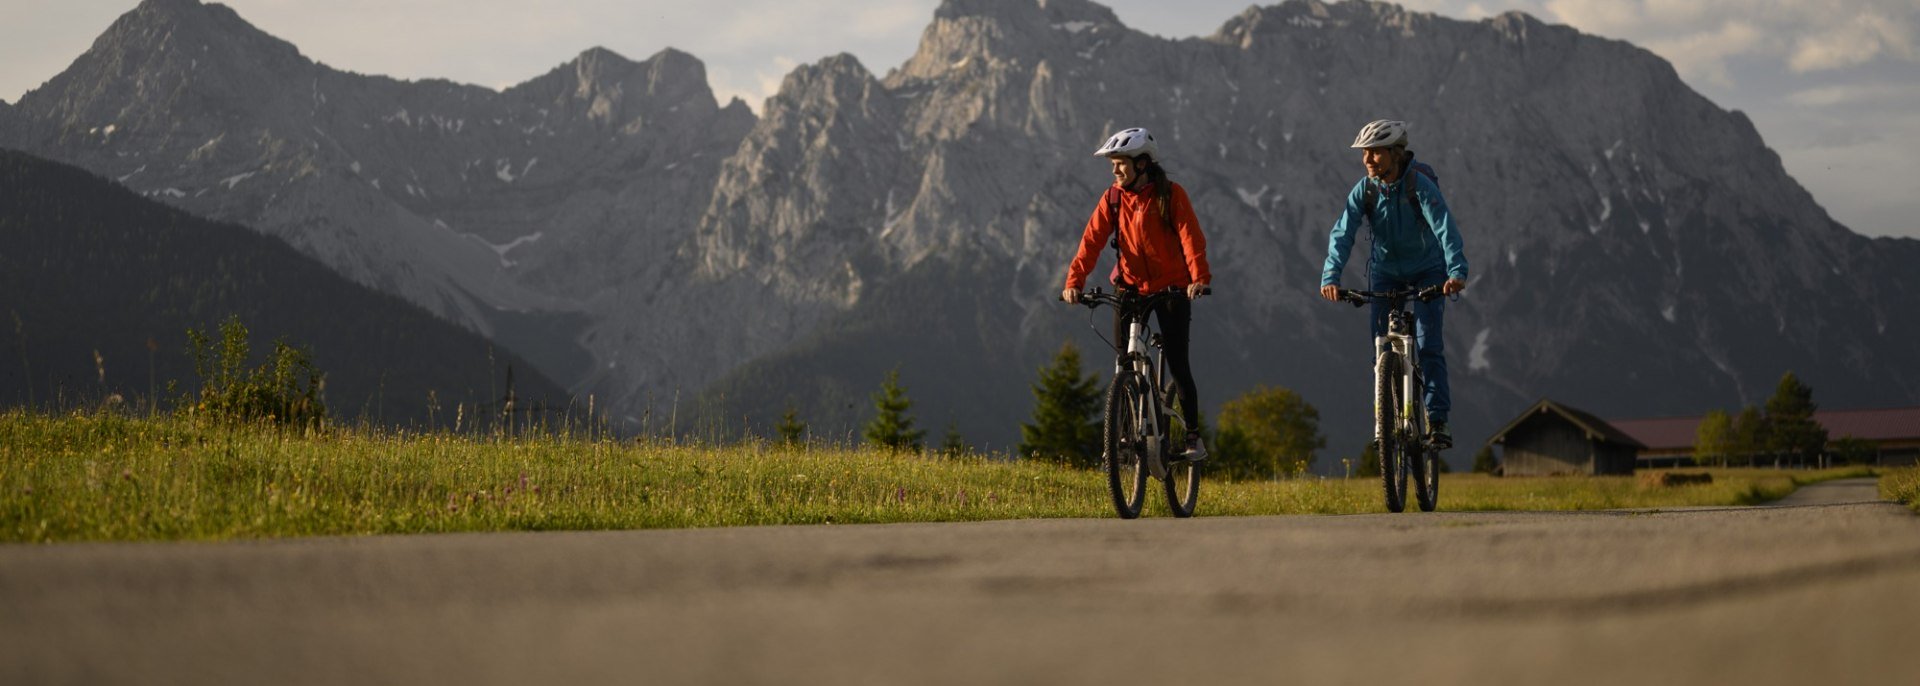 Aussichtsreiche Biketour mit Blick auf die Karwendelberge. Unterwegs an den Buckelwiesen zwischen Krün und Mittenwald., © Alpenwelt Karwendel | Philipp Gülland